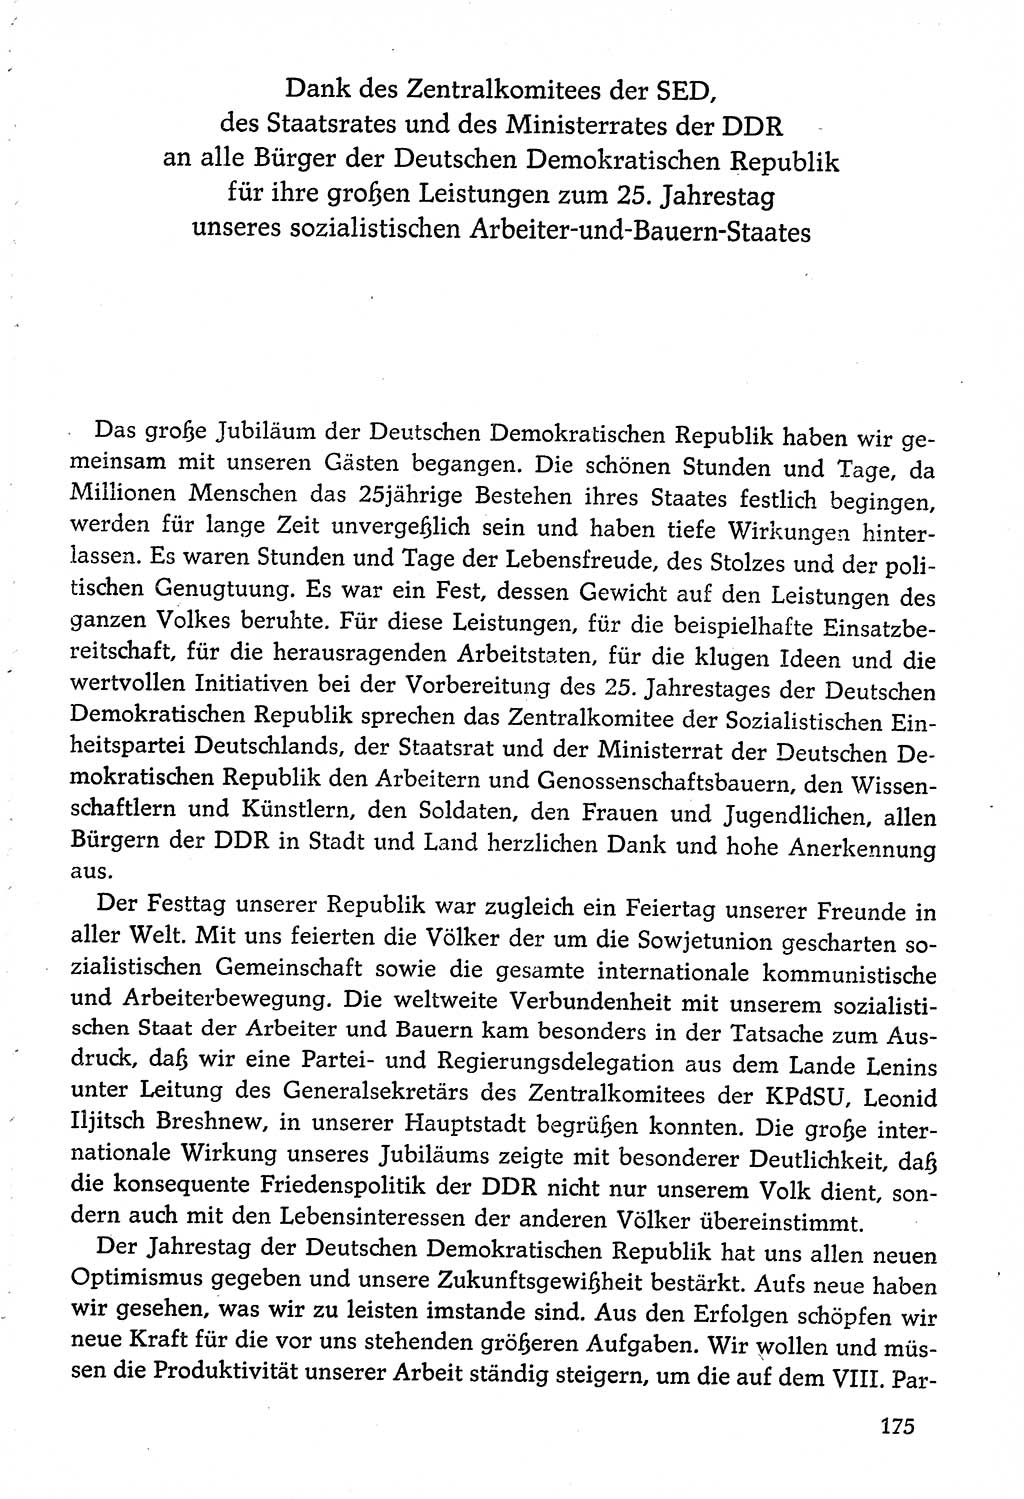 Dokumente der Sozialistischen Einheitspartei Deutschlands (SED) [Deutsche Demokratische Republik (DDR)] 1974-1975, Seite 175 (Dok. SED DDR 1978, Bd. ⅩⅤ, S. 175)